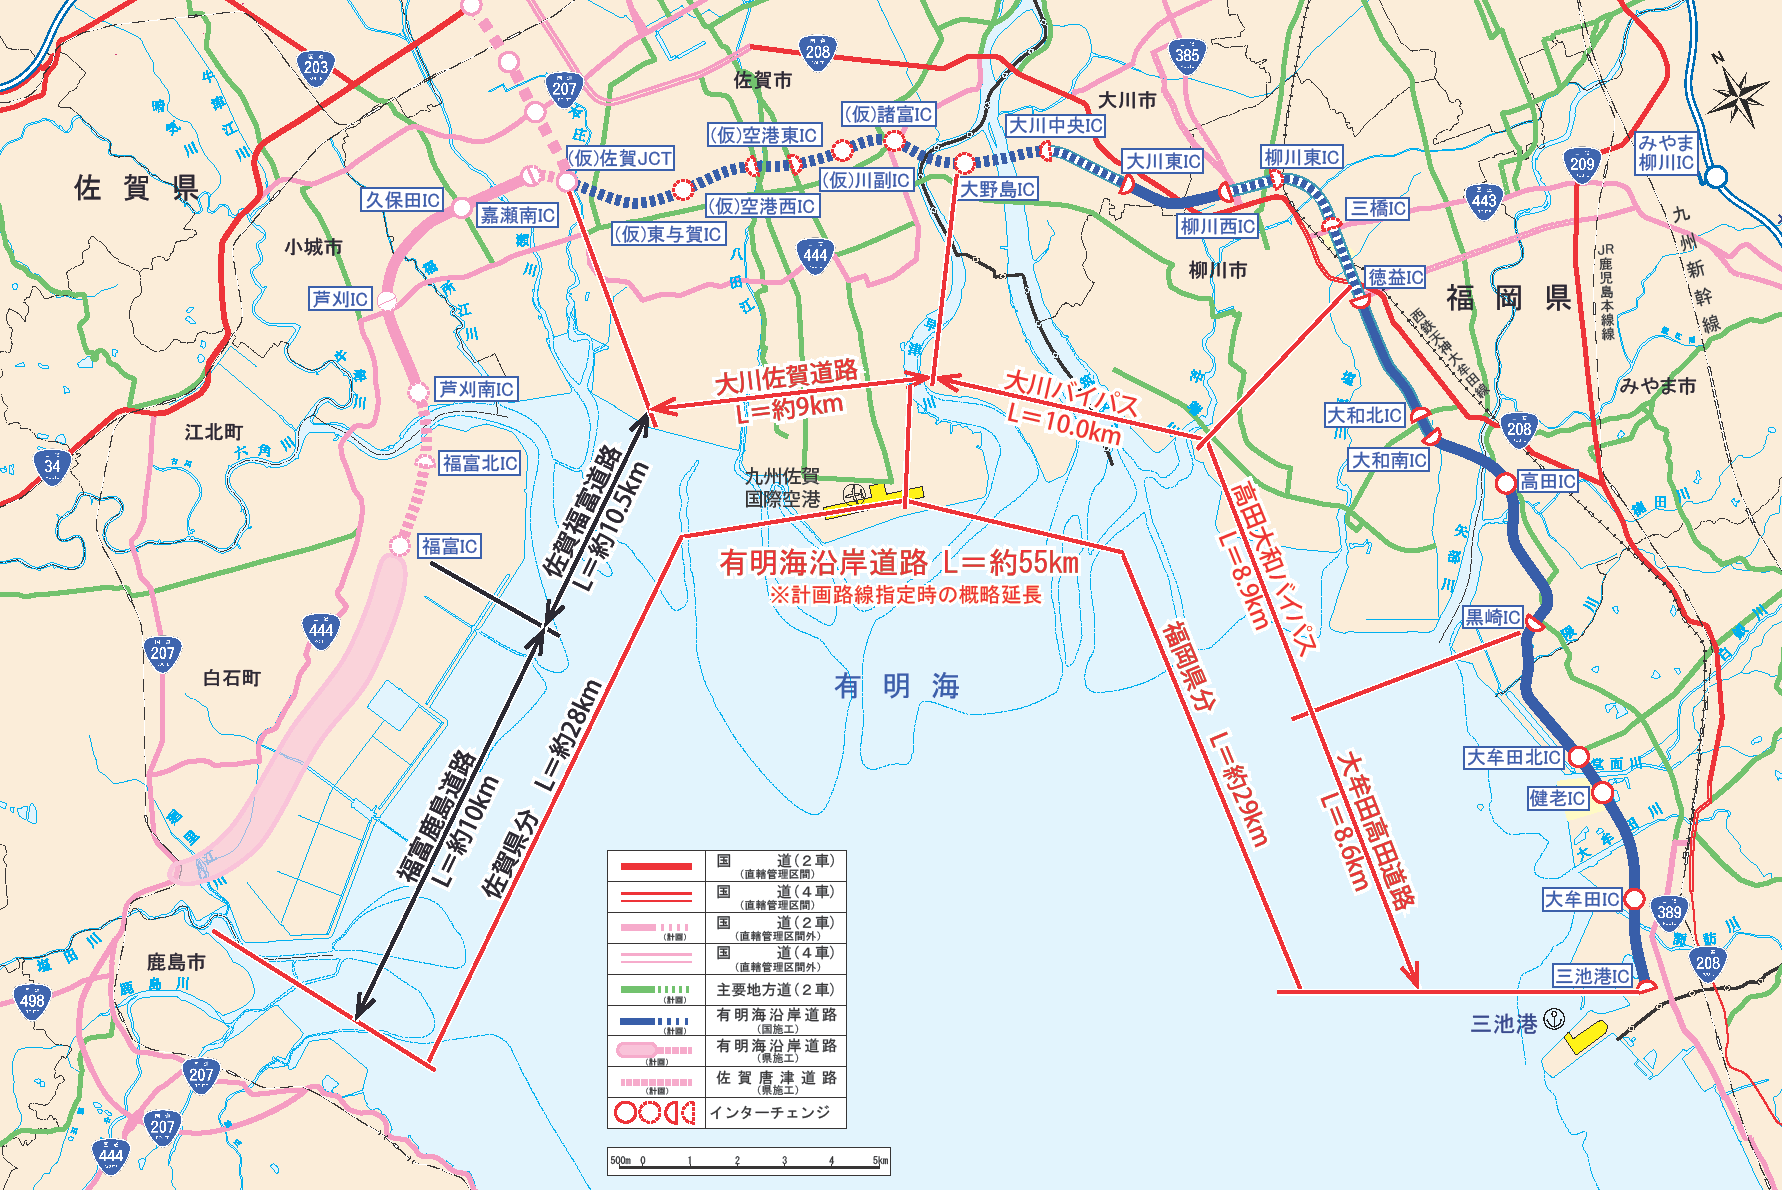 有明海沿岸道路の整備計画について 鹿島市 佐賀県